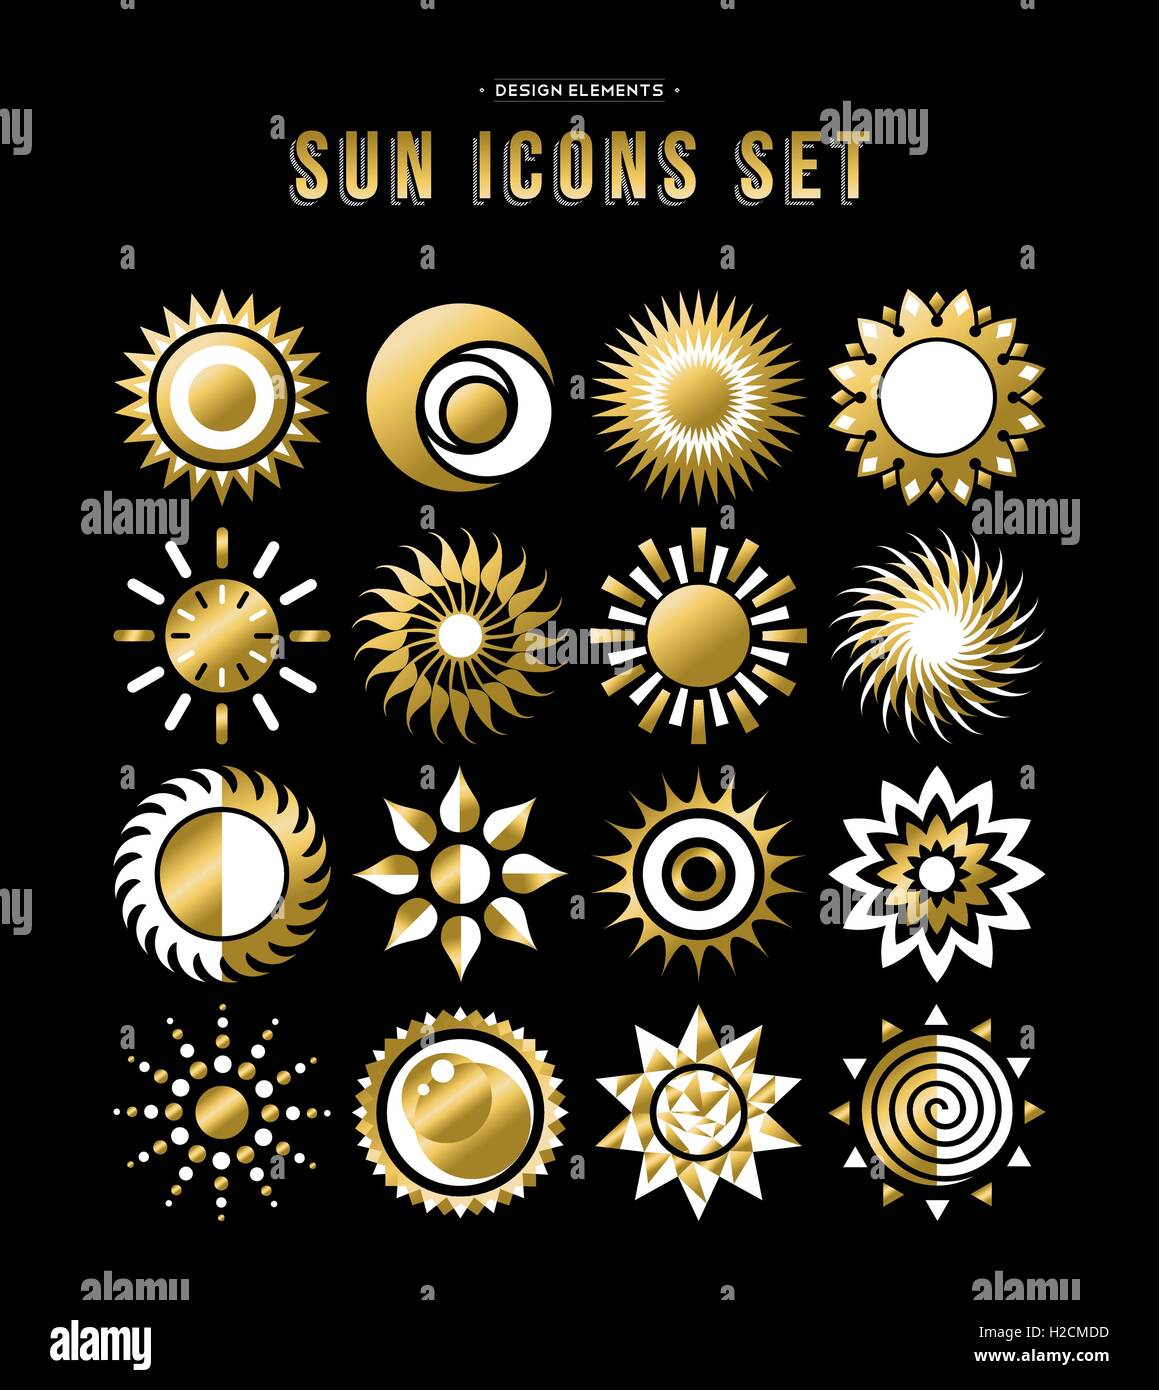 Ensemble de l'icône soleil illustrations, dessins d'or abstrait dans l'art pour conditions météorologiques ou climatiques projet. Vecteur EPS10. Illustration de Vecteur